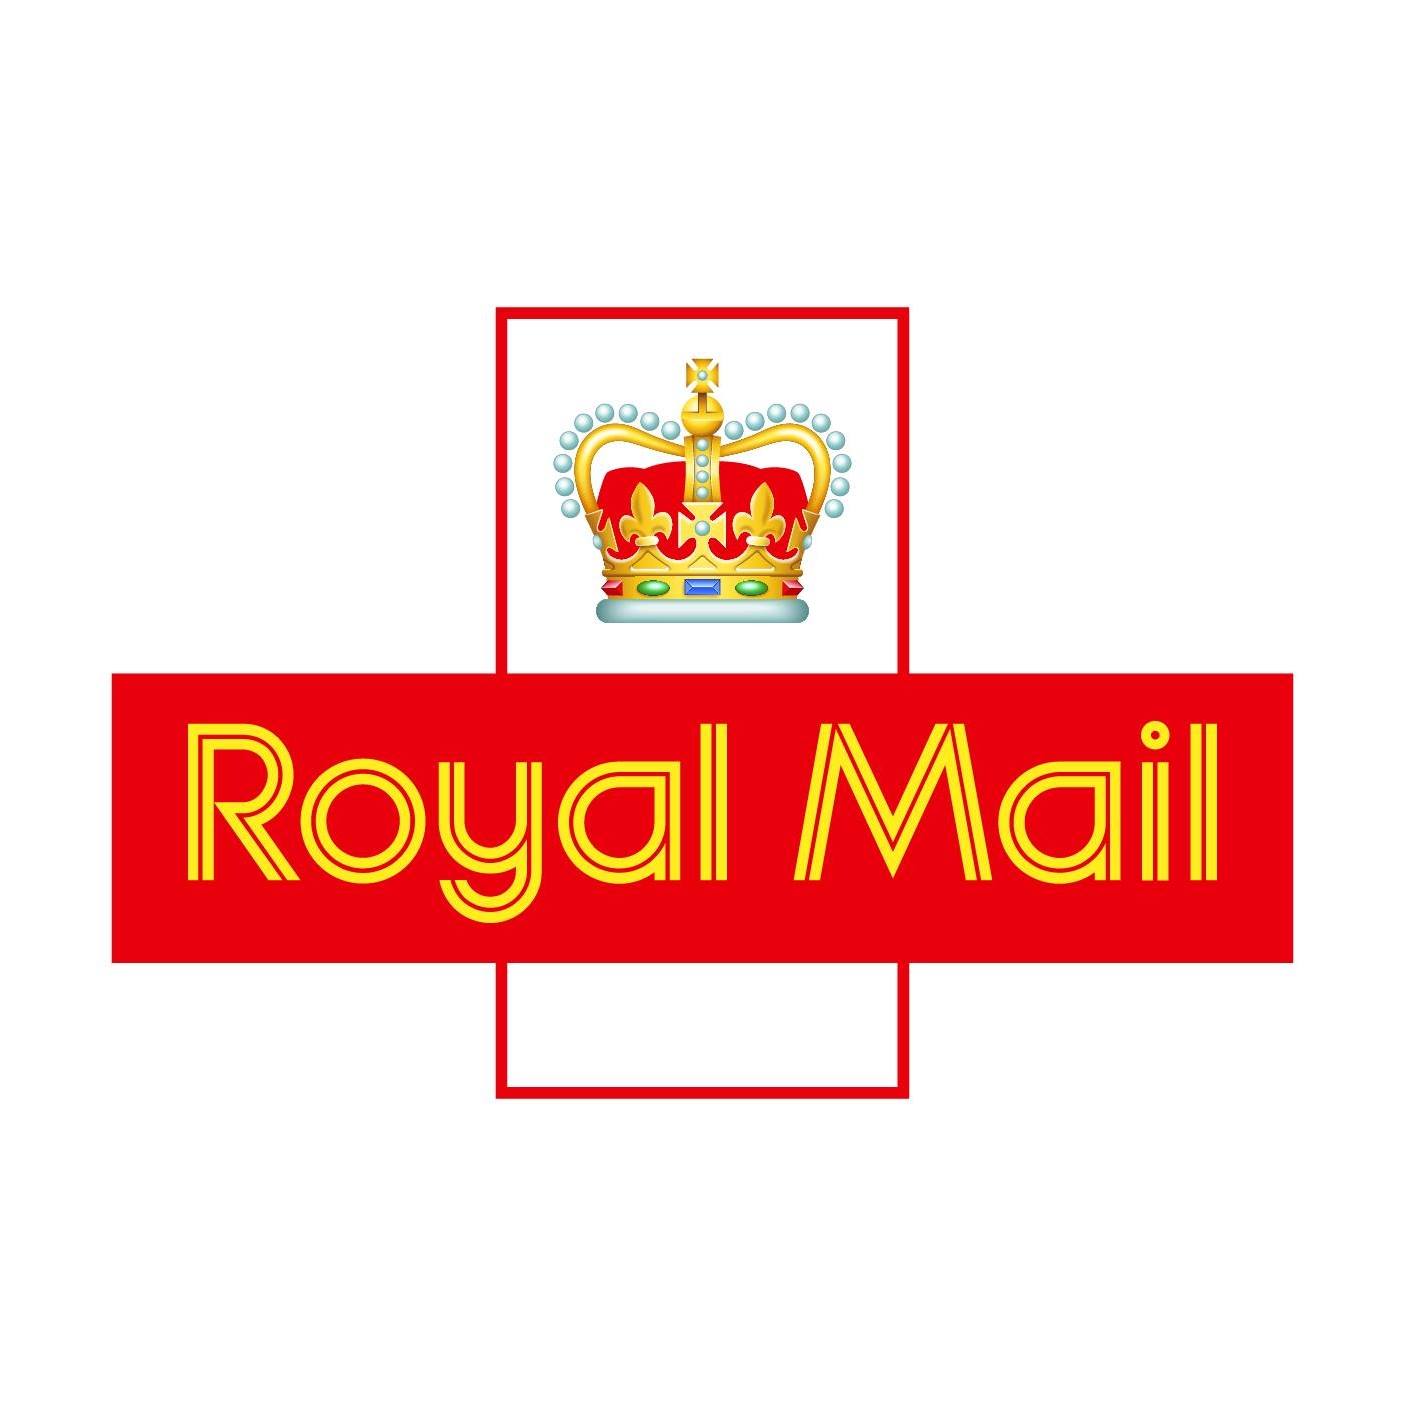 Company logo of Royal Mail